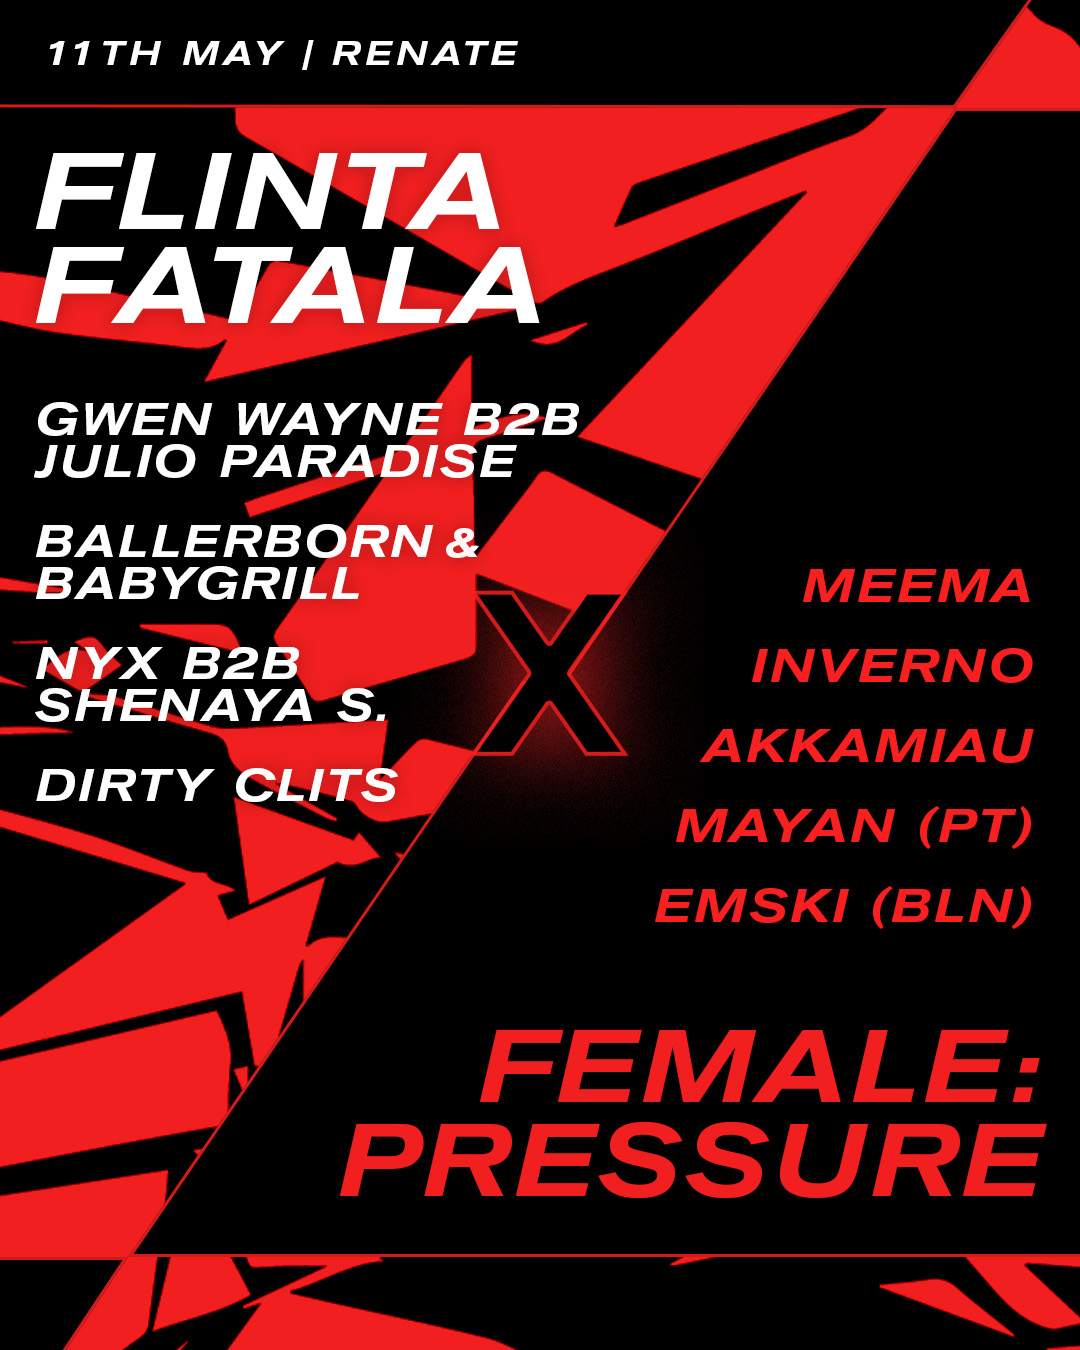 FLINTA FATALA X female:pressure - Página trasera